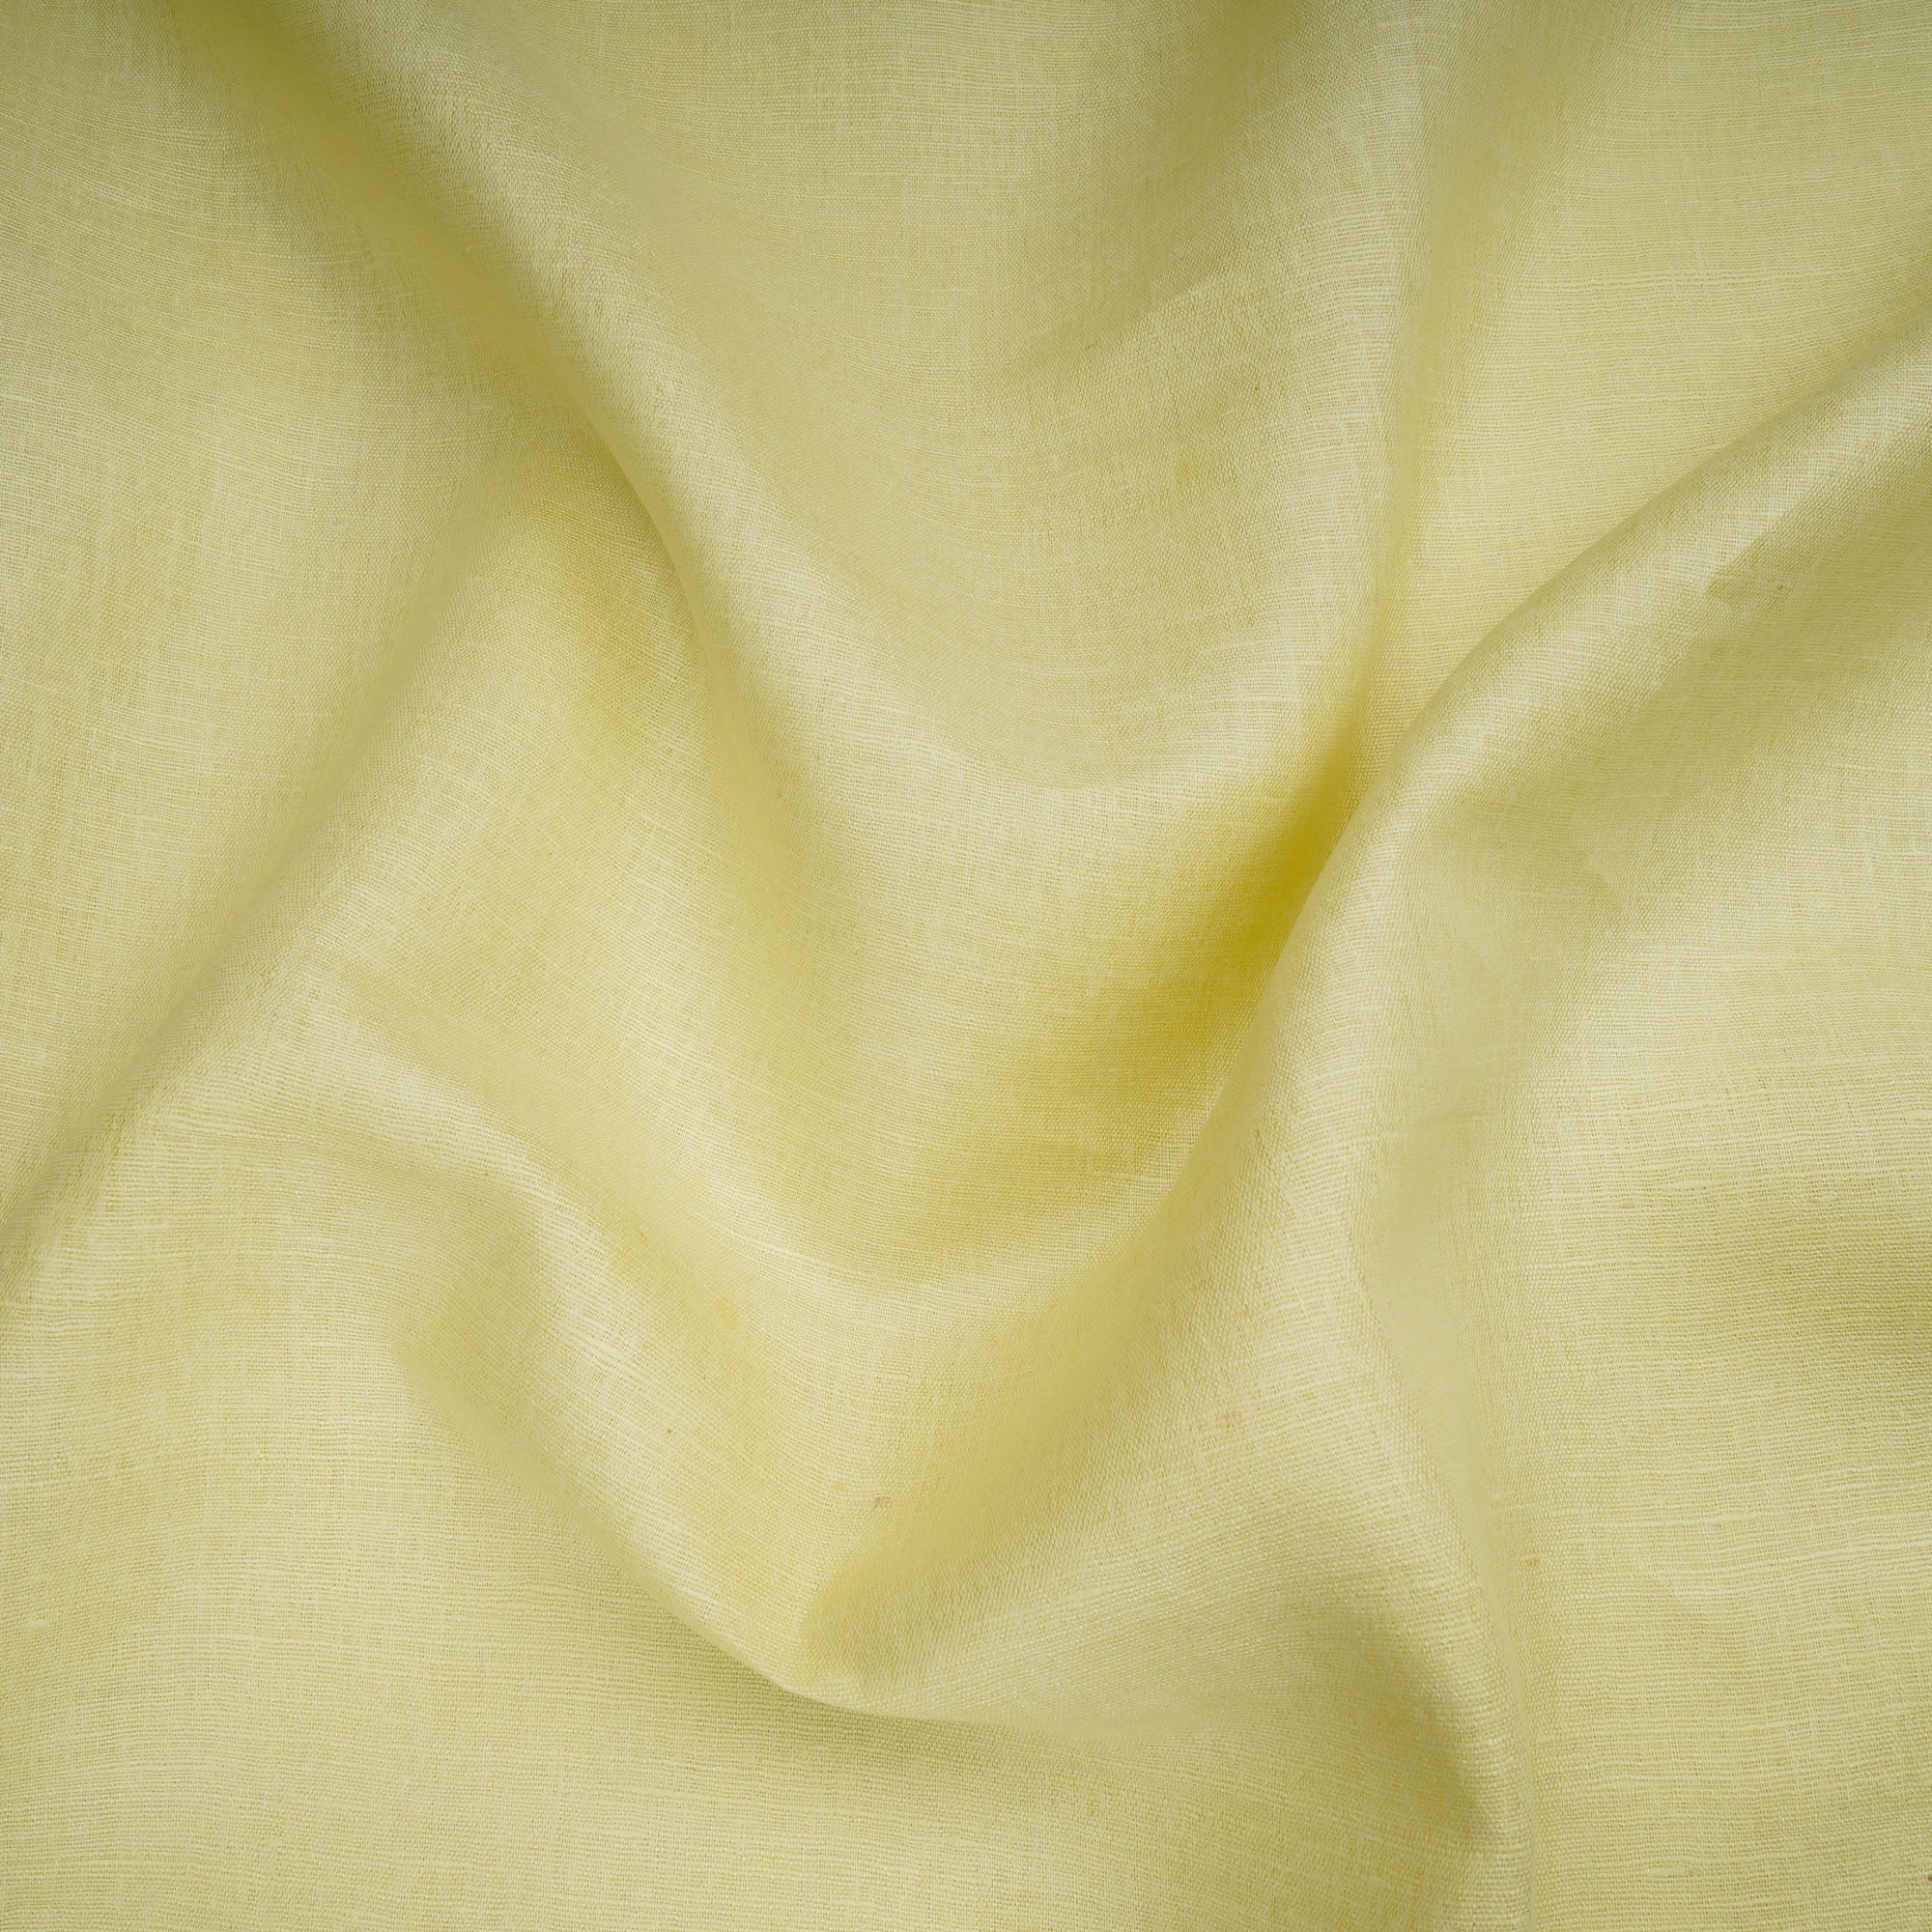 (Pre-Cut 3.65 Mtr) Lime Green Natural Matka Silk Fabric